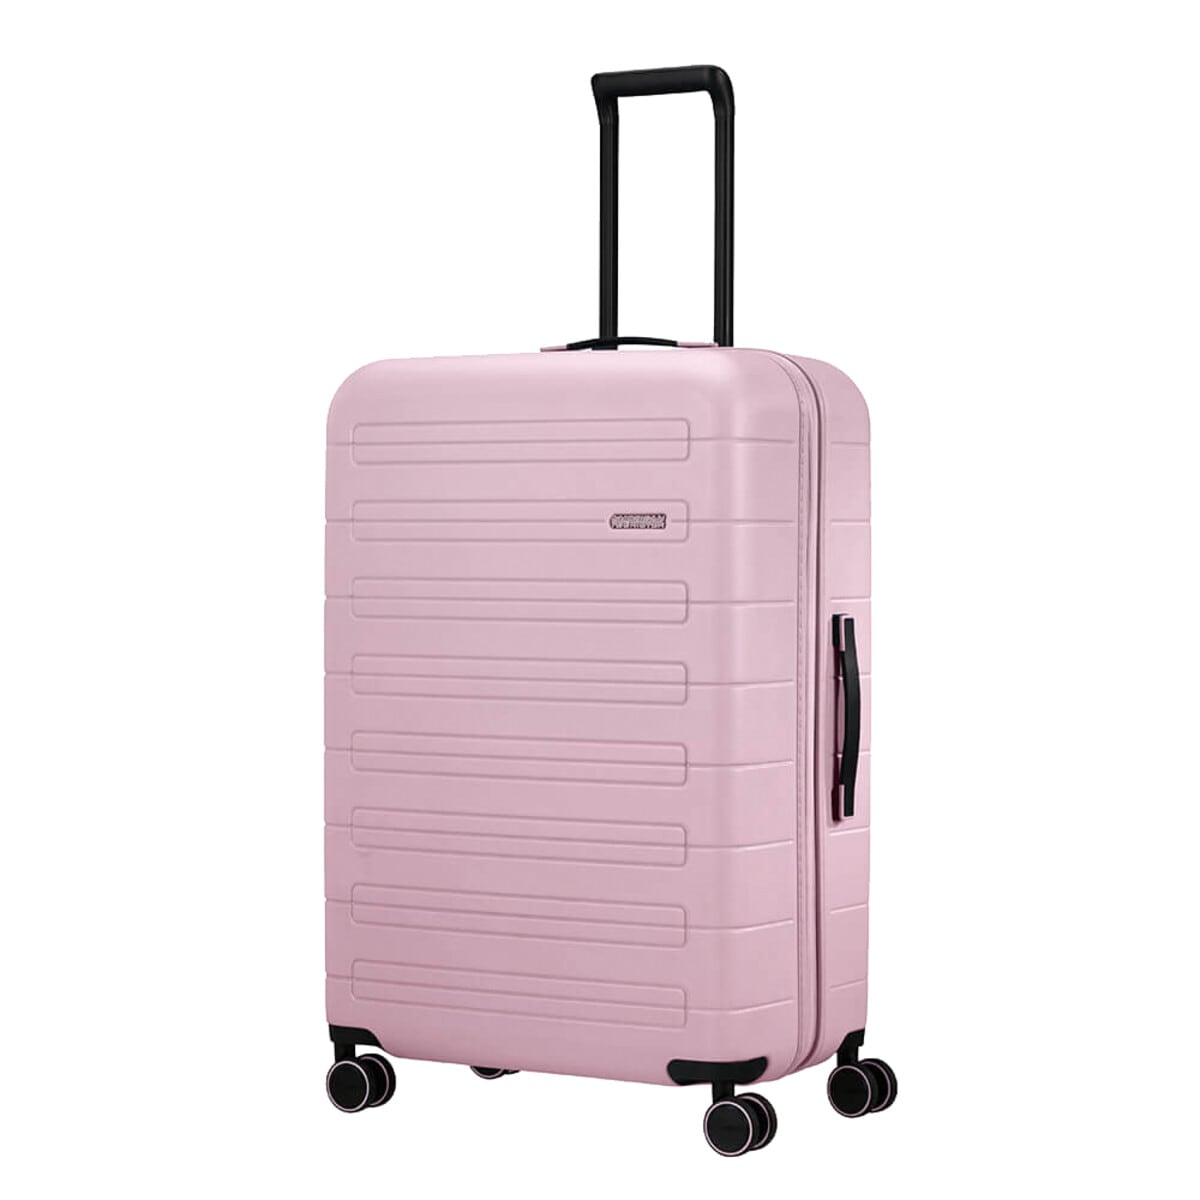 American Tourister stor koffert med 4 hjul, rosa